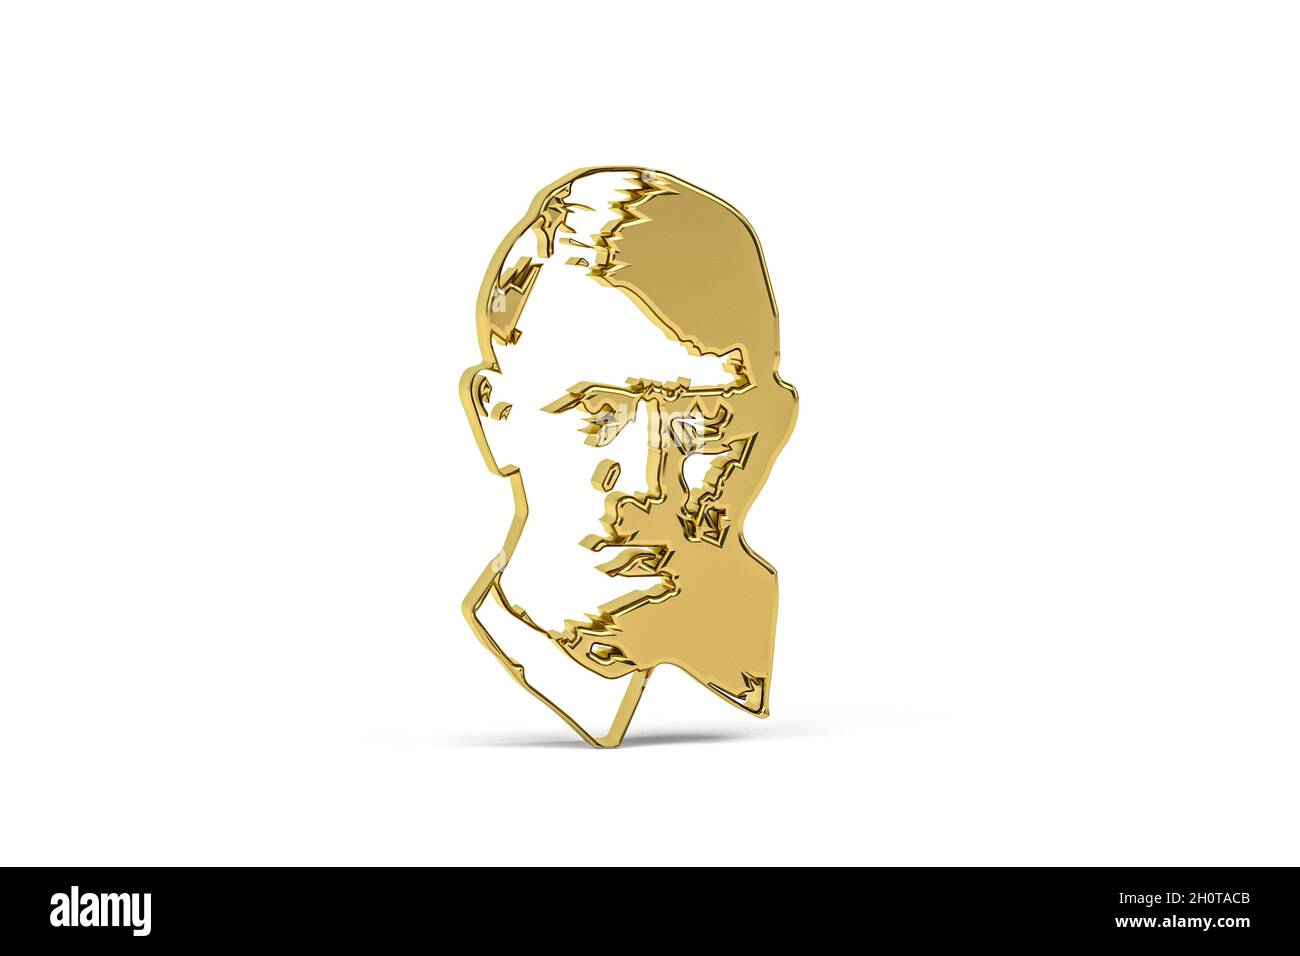 Icône Golden nazisme isolée sur fond blanc - rendu 3D Banque D'Images